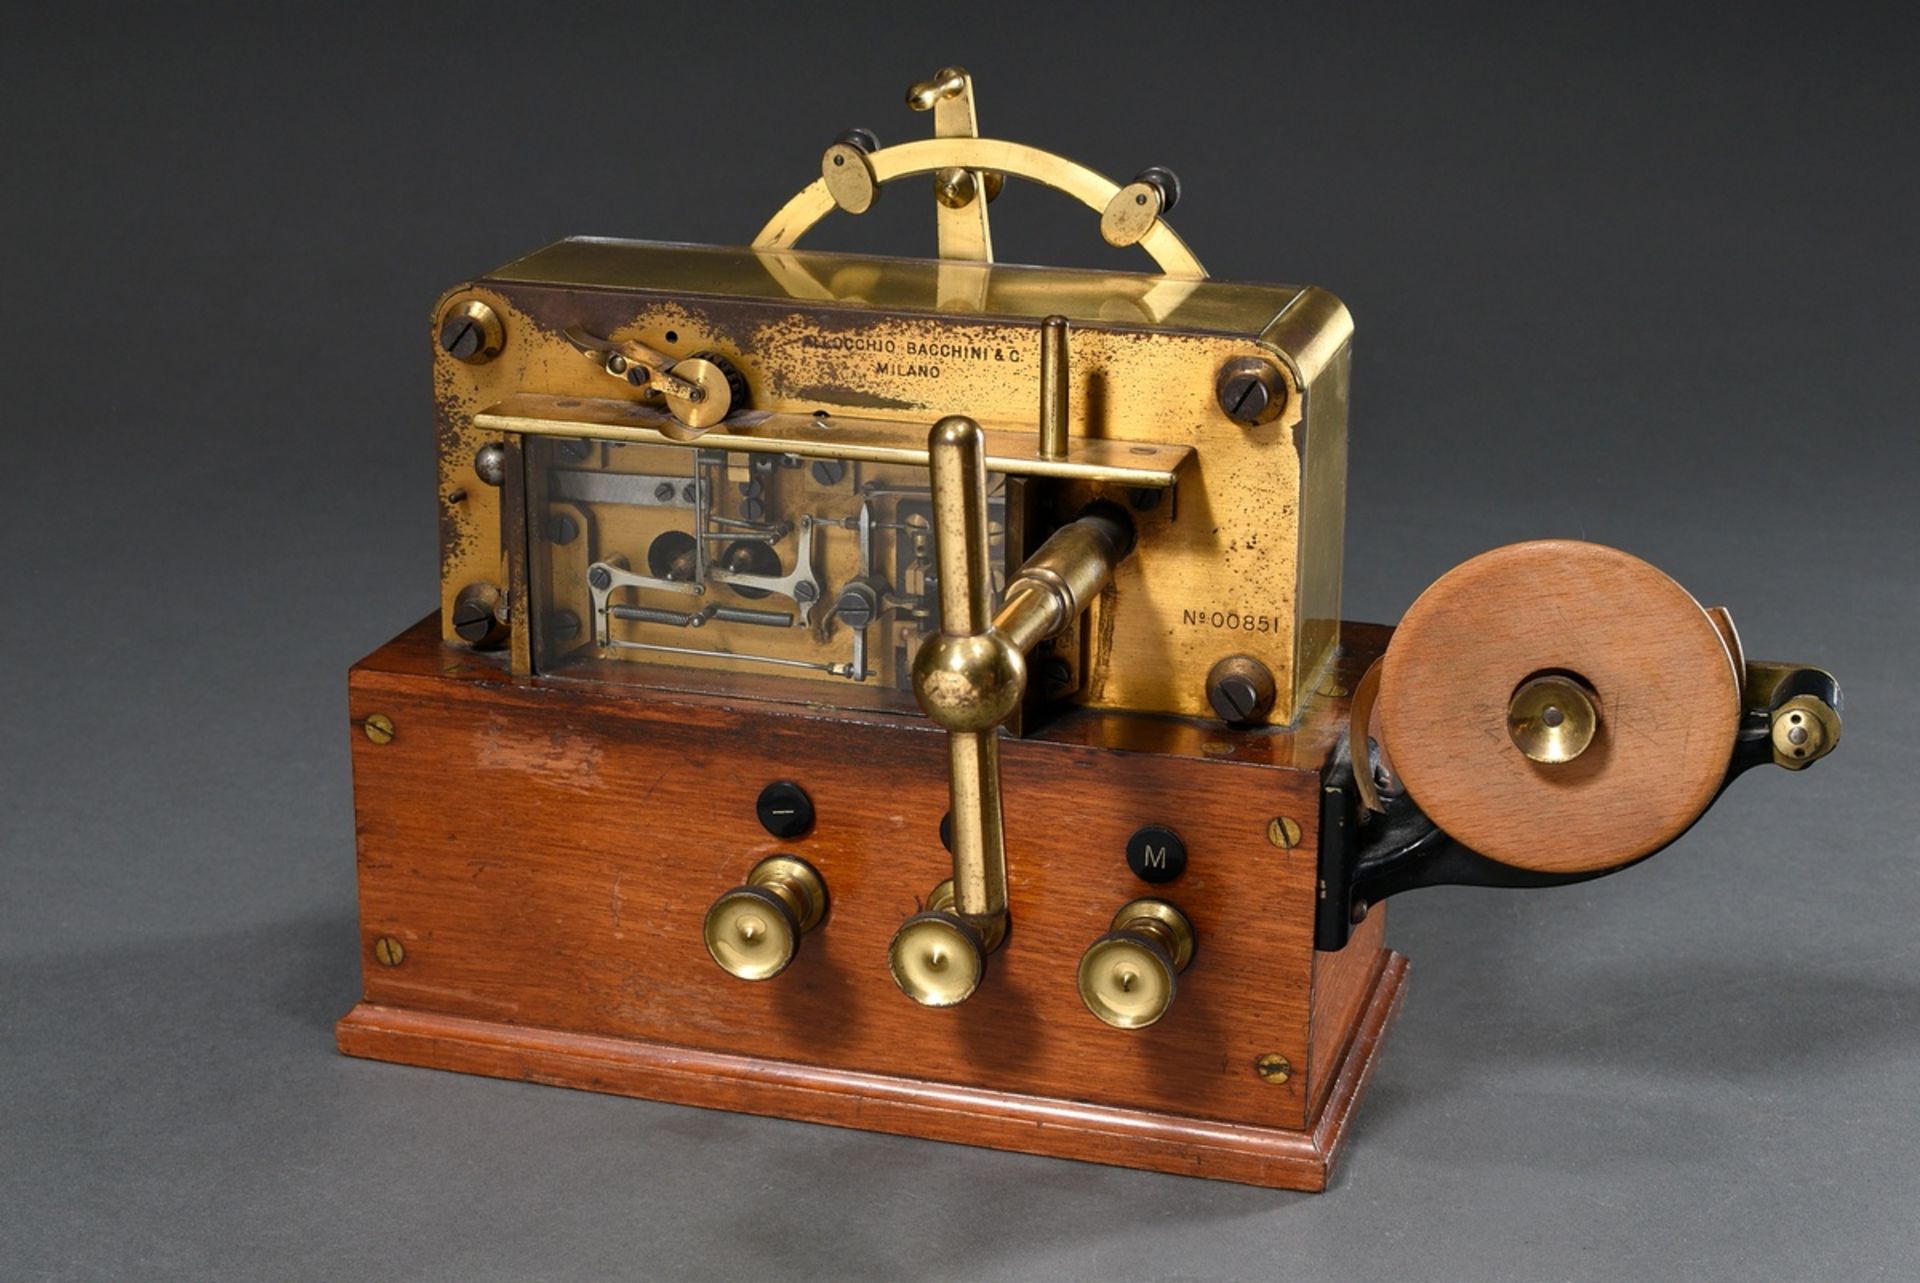 Morse device "Allocchio Bacchini & C./ Milano", serial no. 00851, wood and brass, 1st half 20th c.,